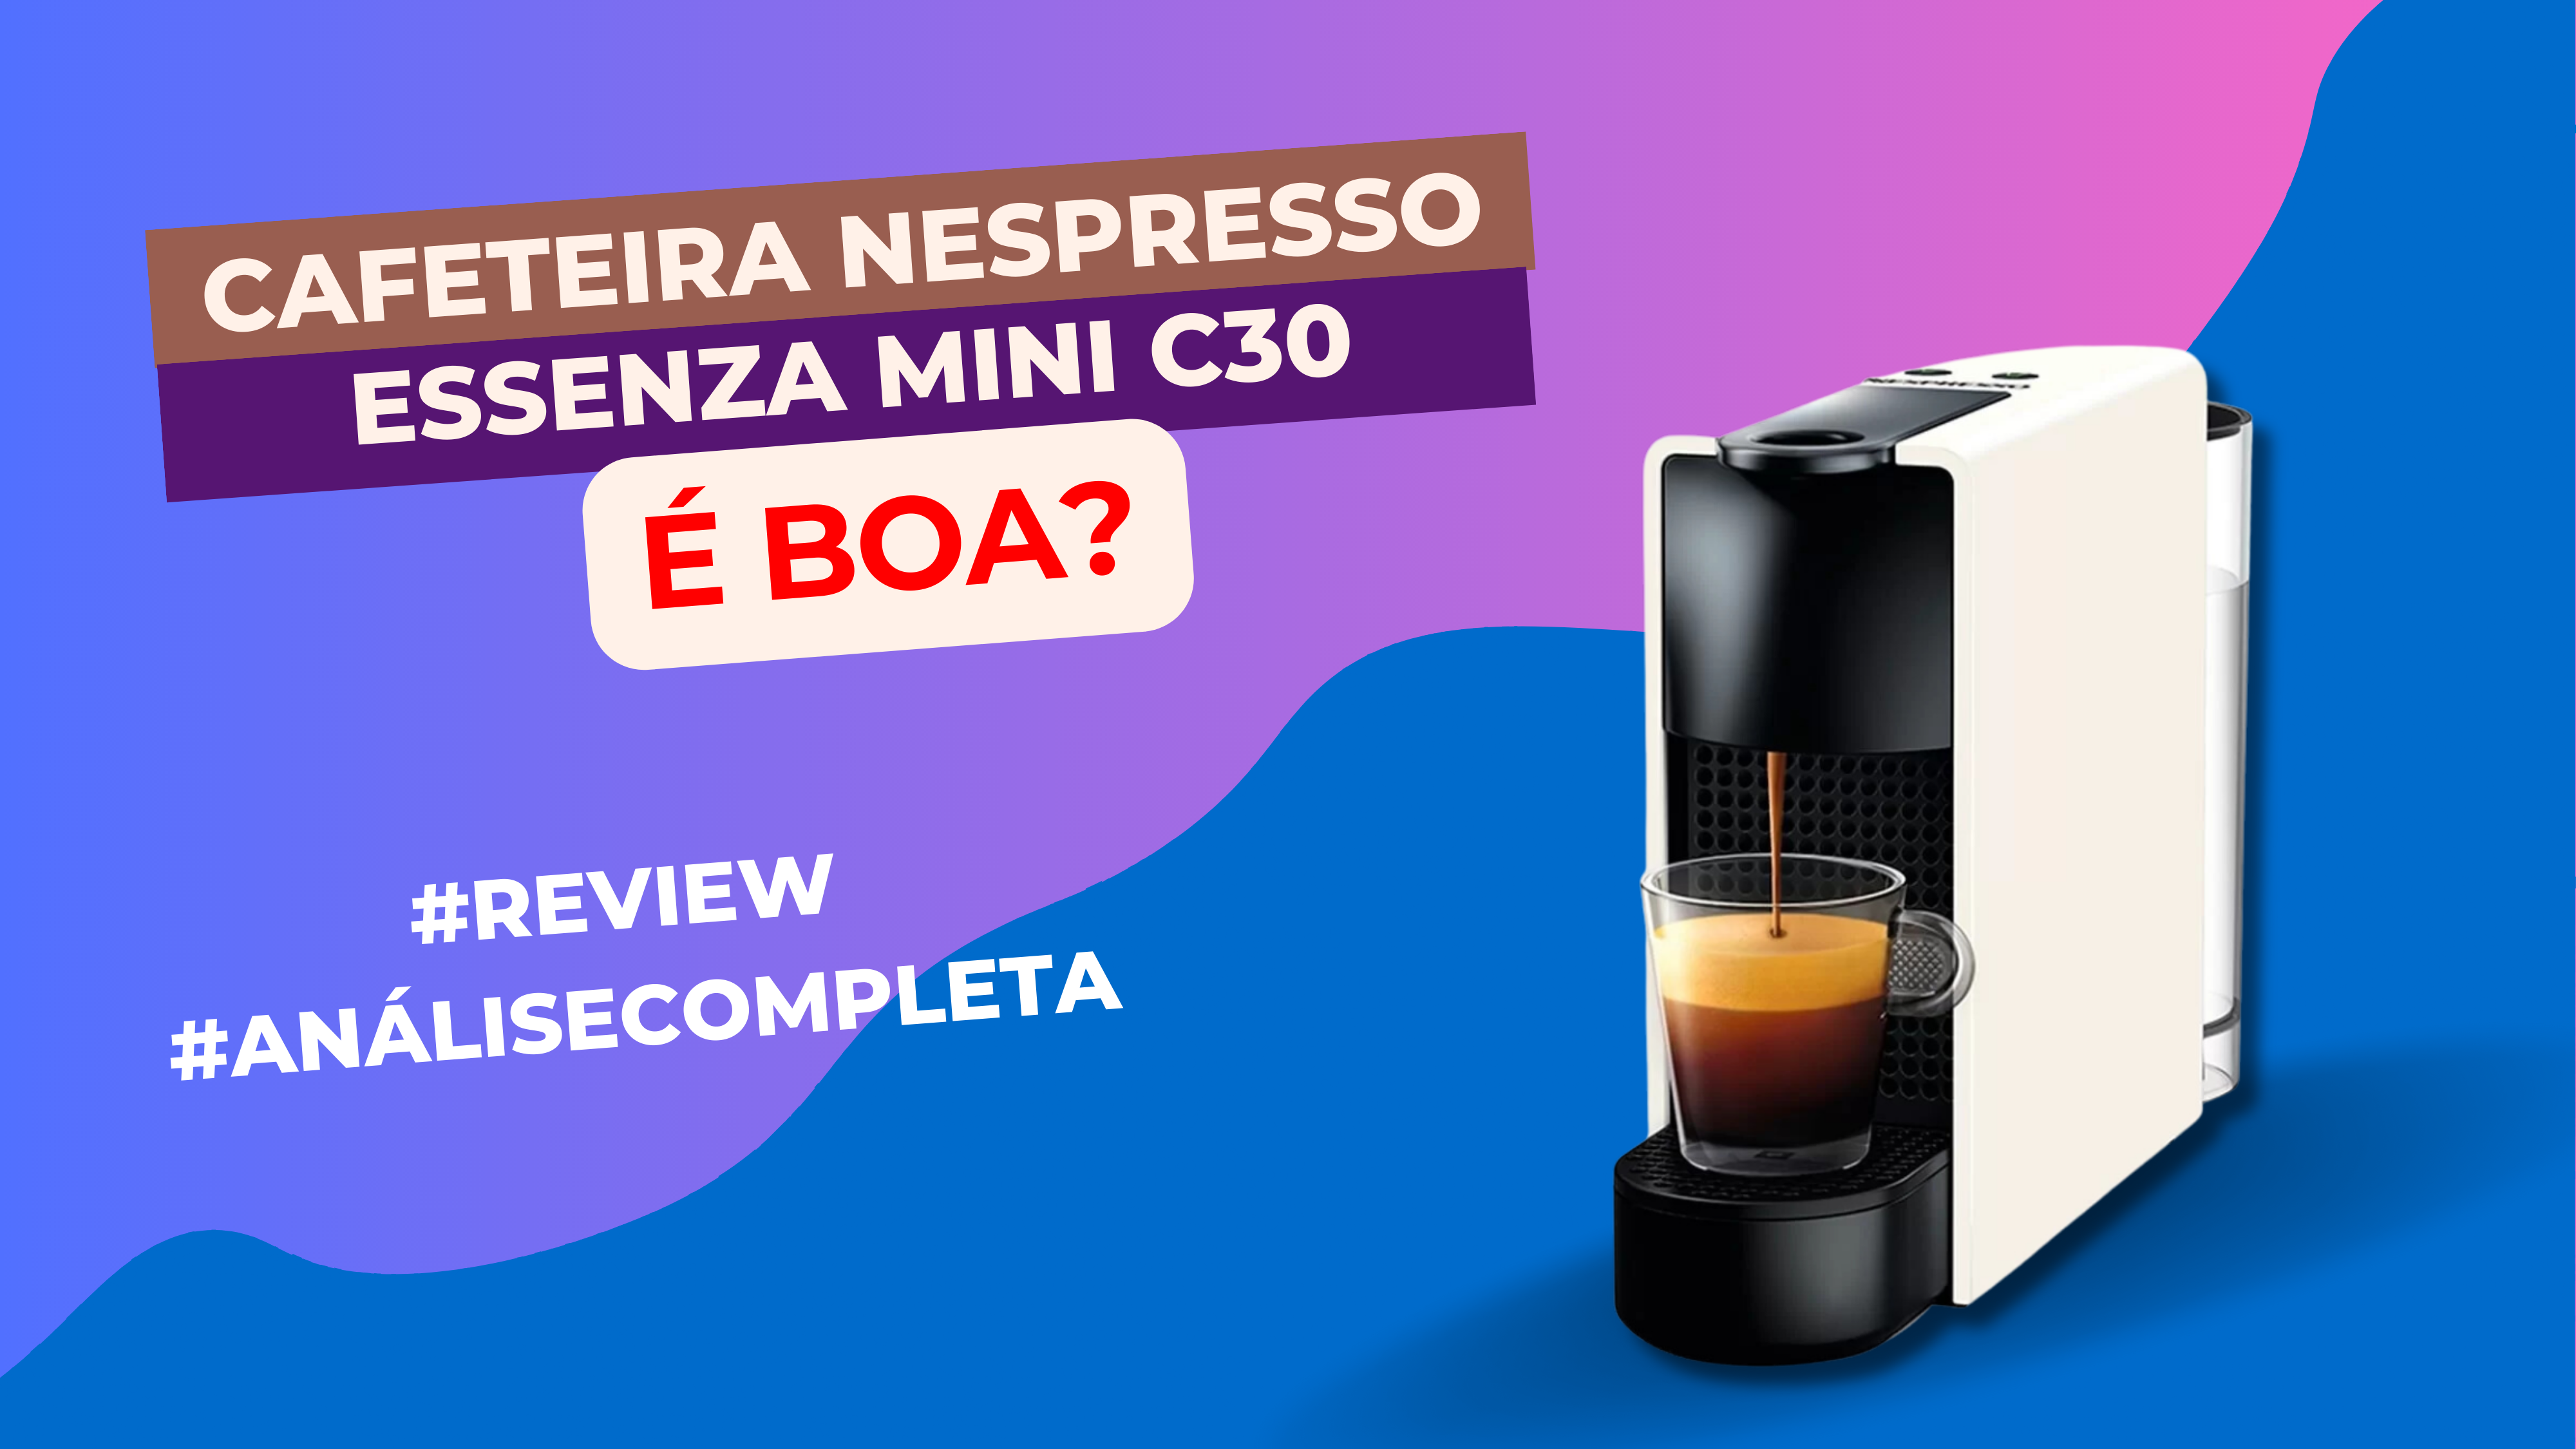 Imagem com Cafeteira Nespresso Essenza Mini C30